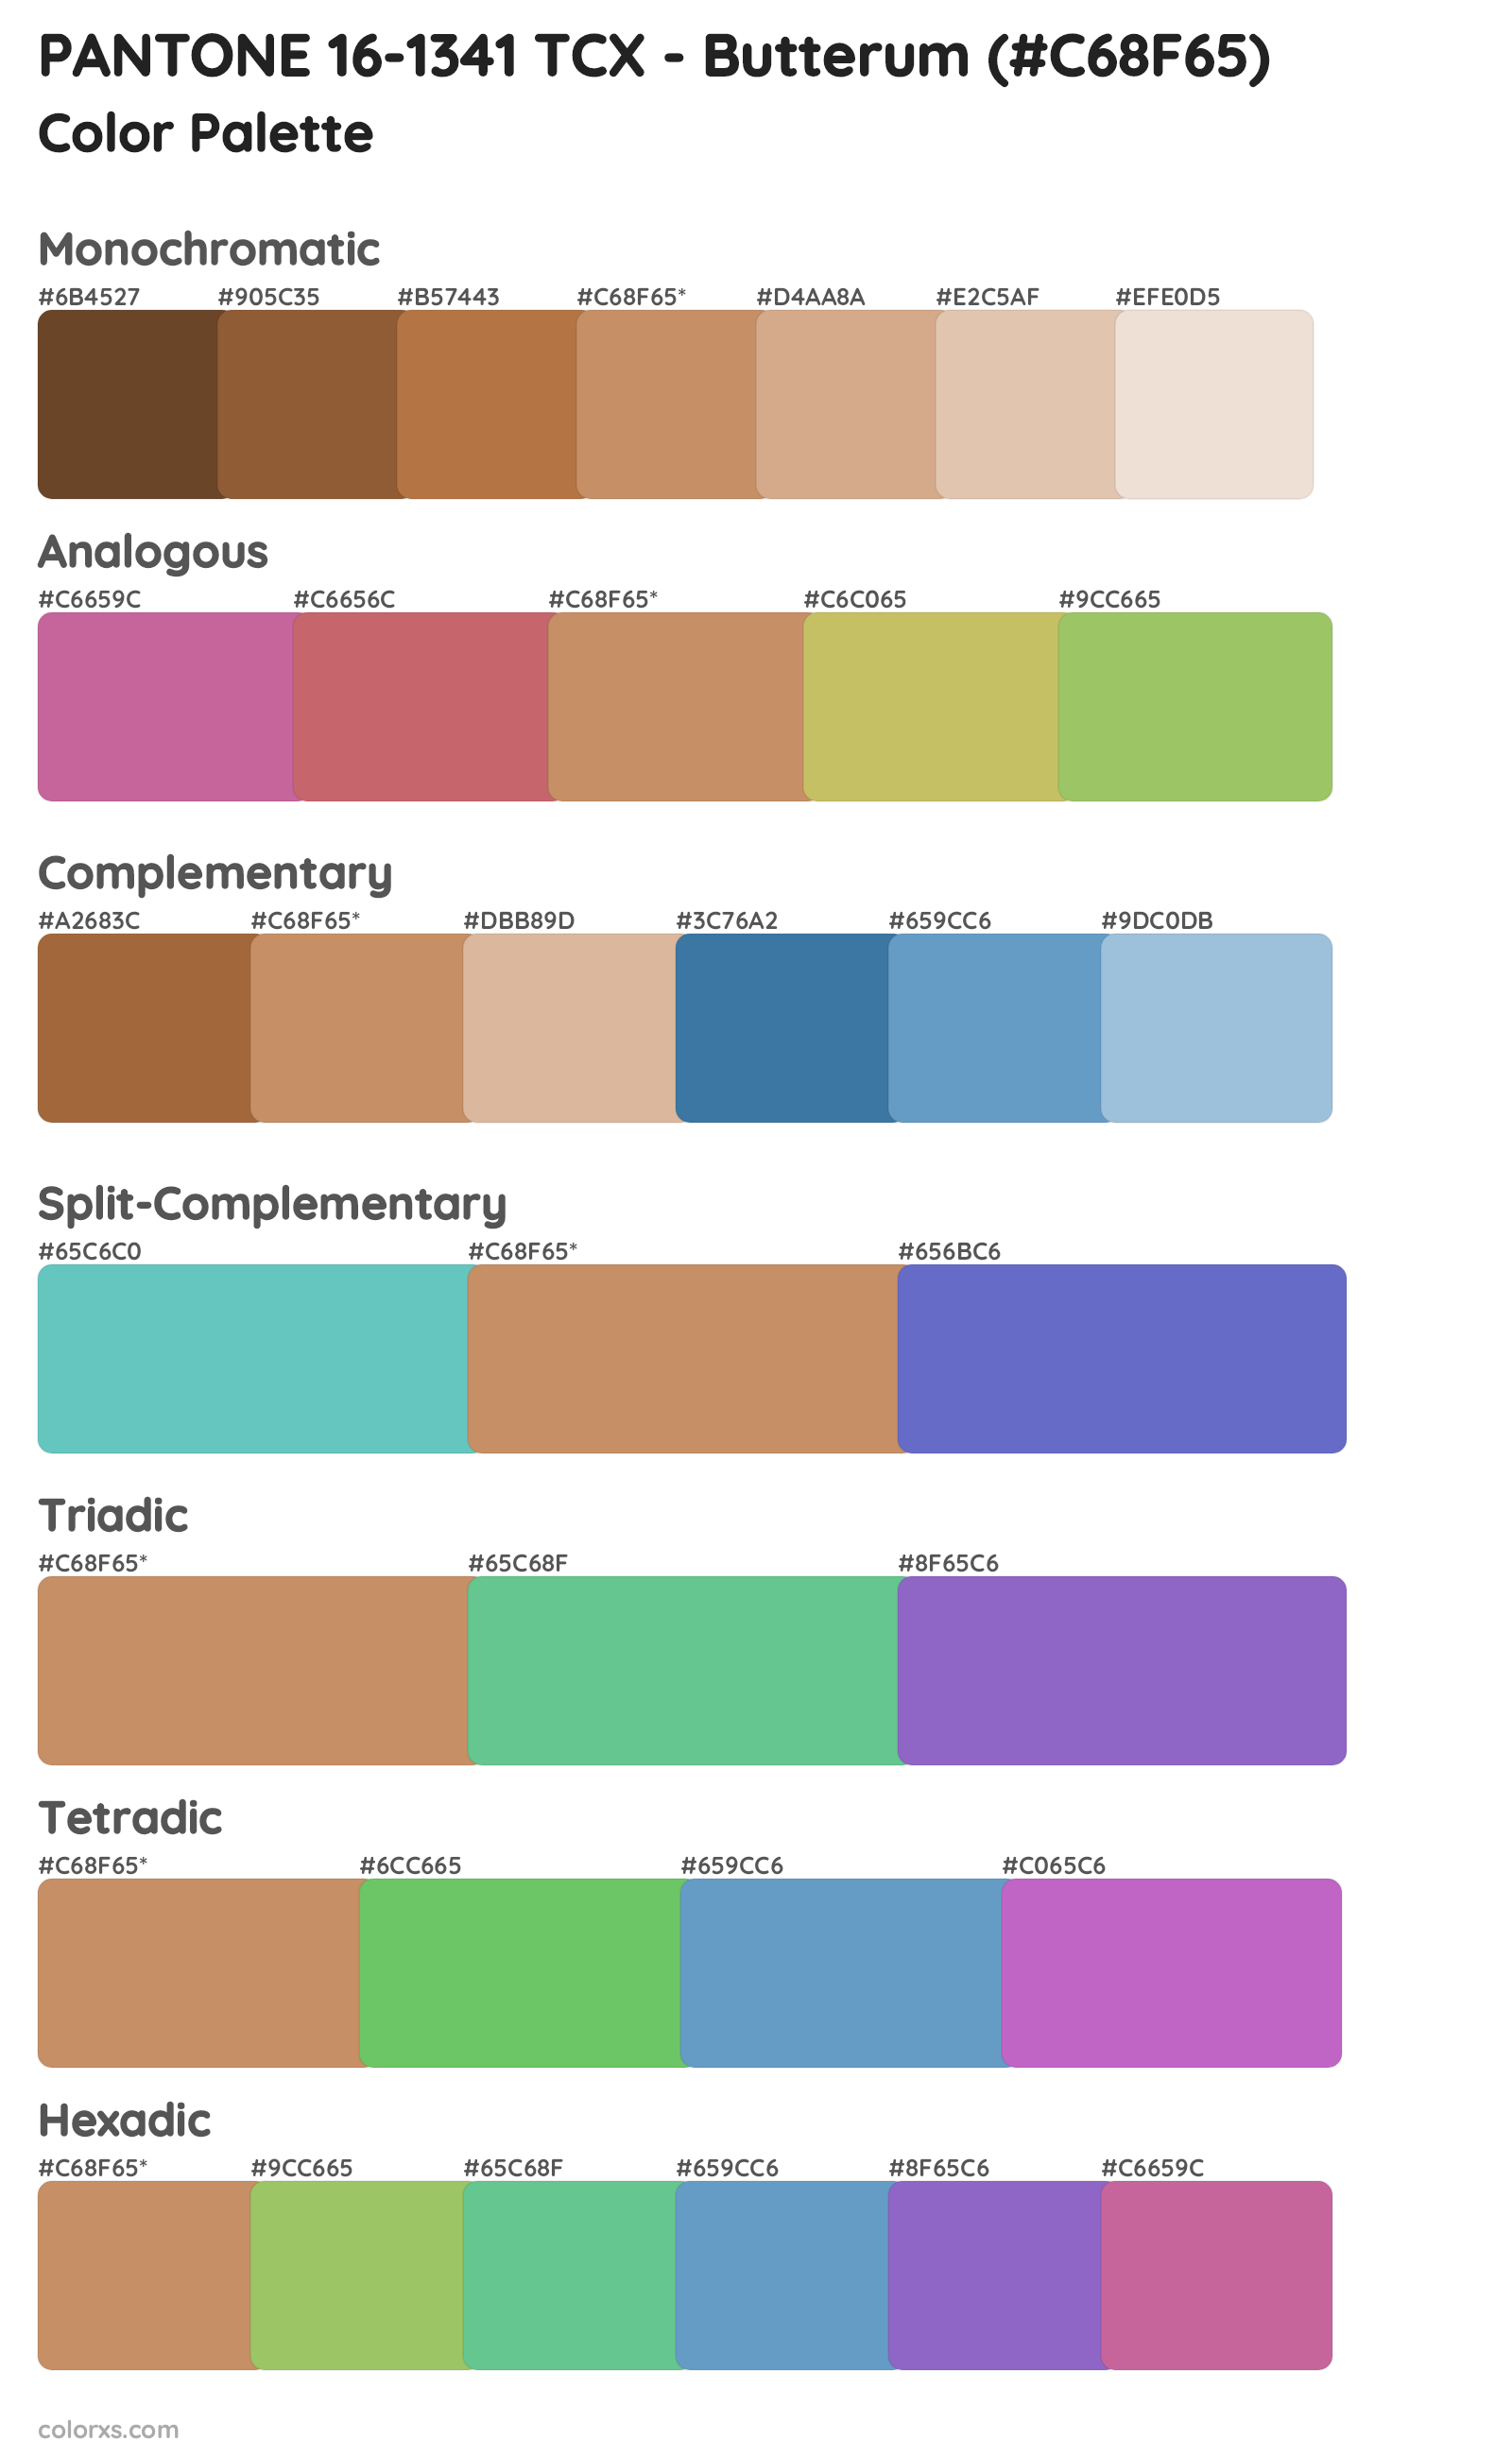 PANTONE 16-1341 TCX - Butterum Color Scheme Palettes